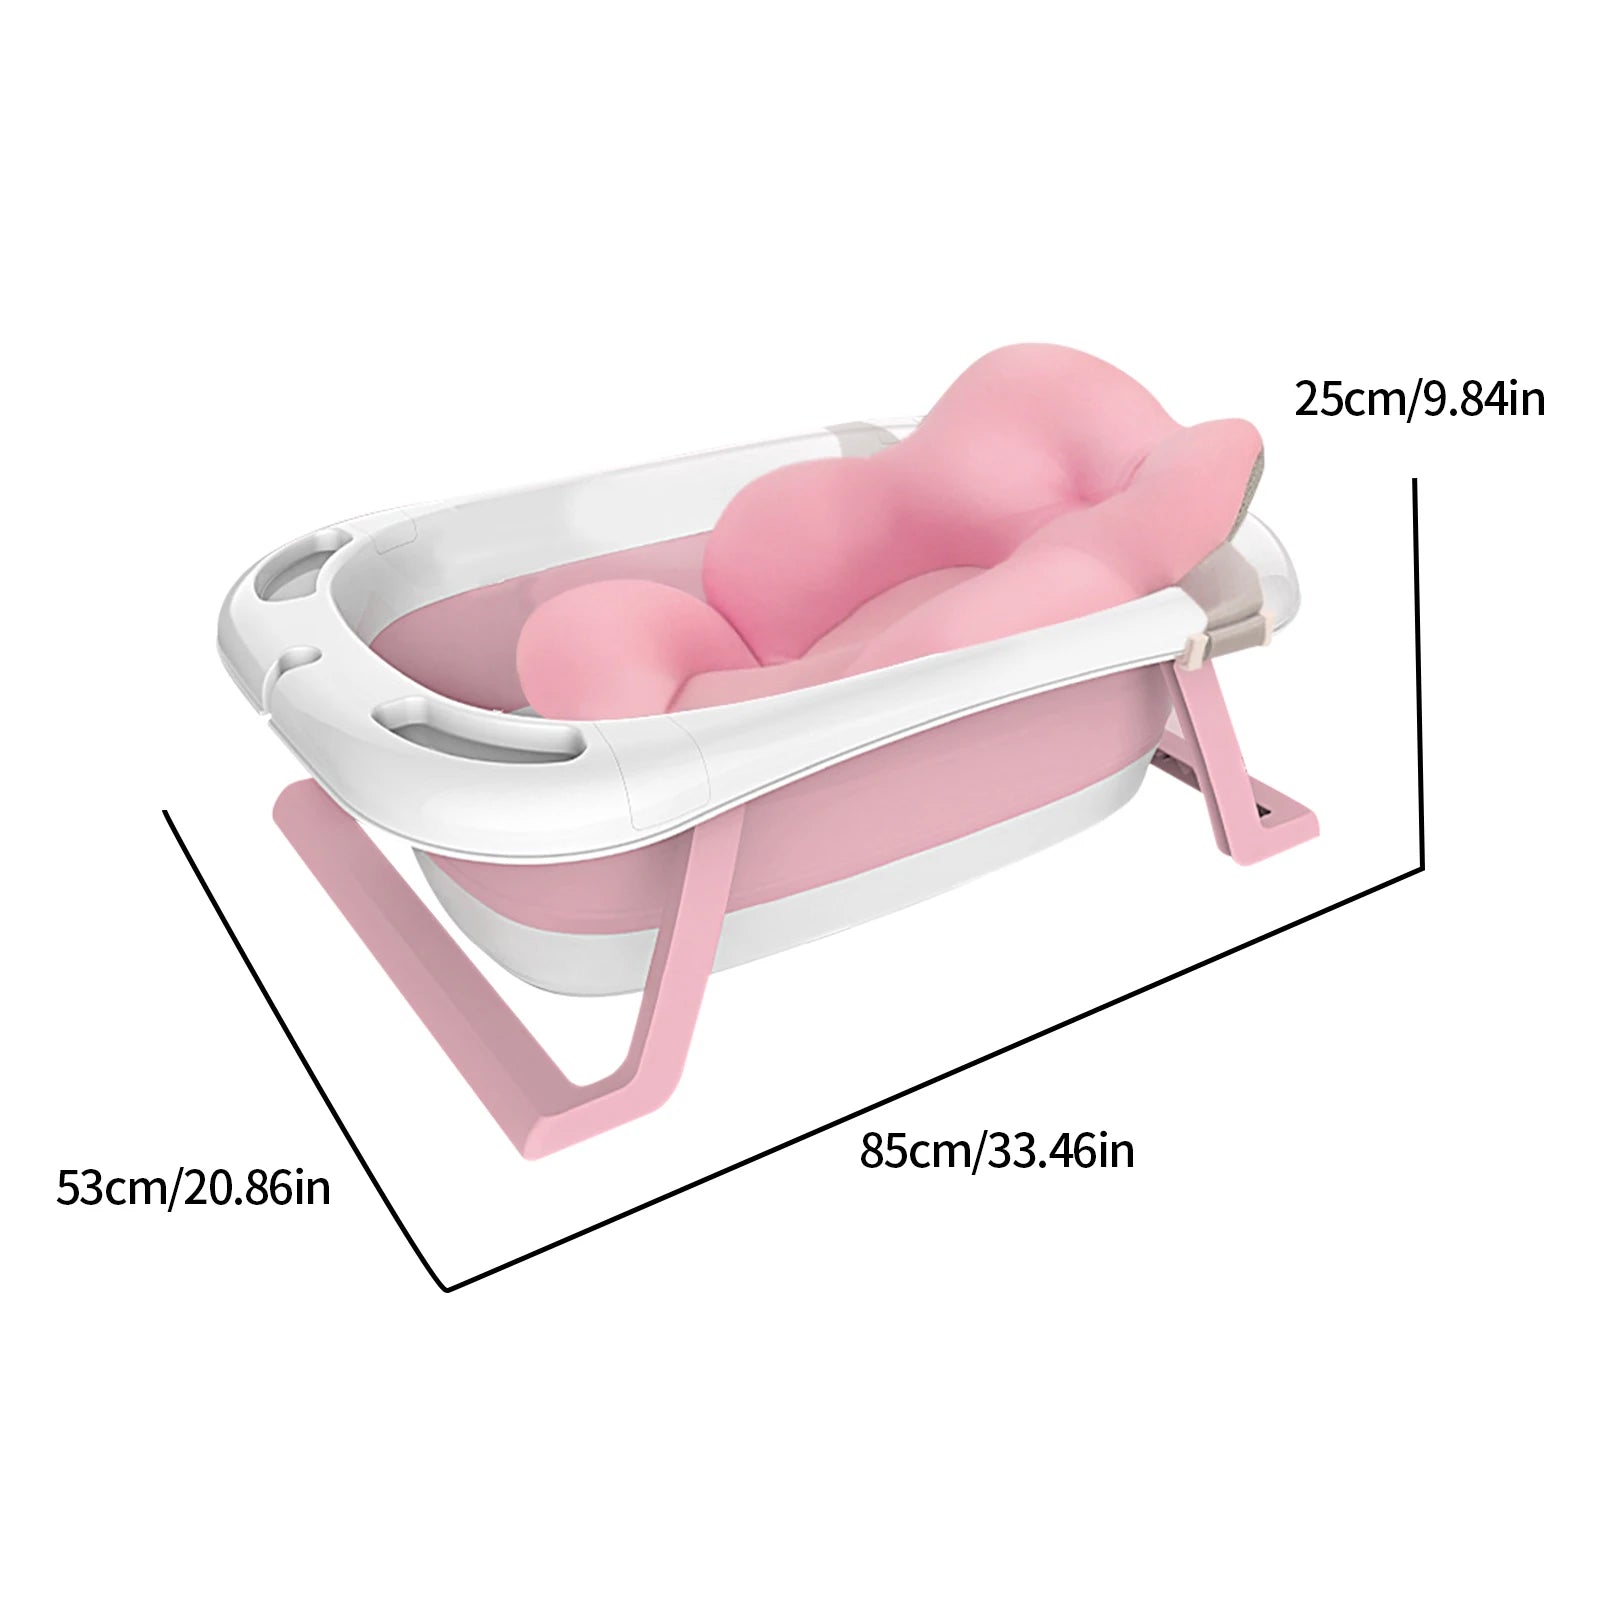 Baignoire Pliable pour Bébé compacte et portable en blanc et rose avec des dimensions étiquetées, avec un intérieur profilé pour le soutien du bébé par BABY PREMA.